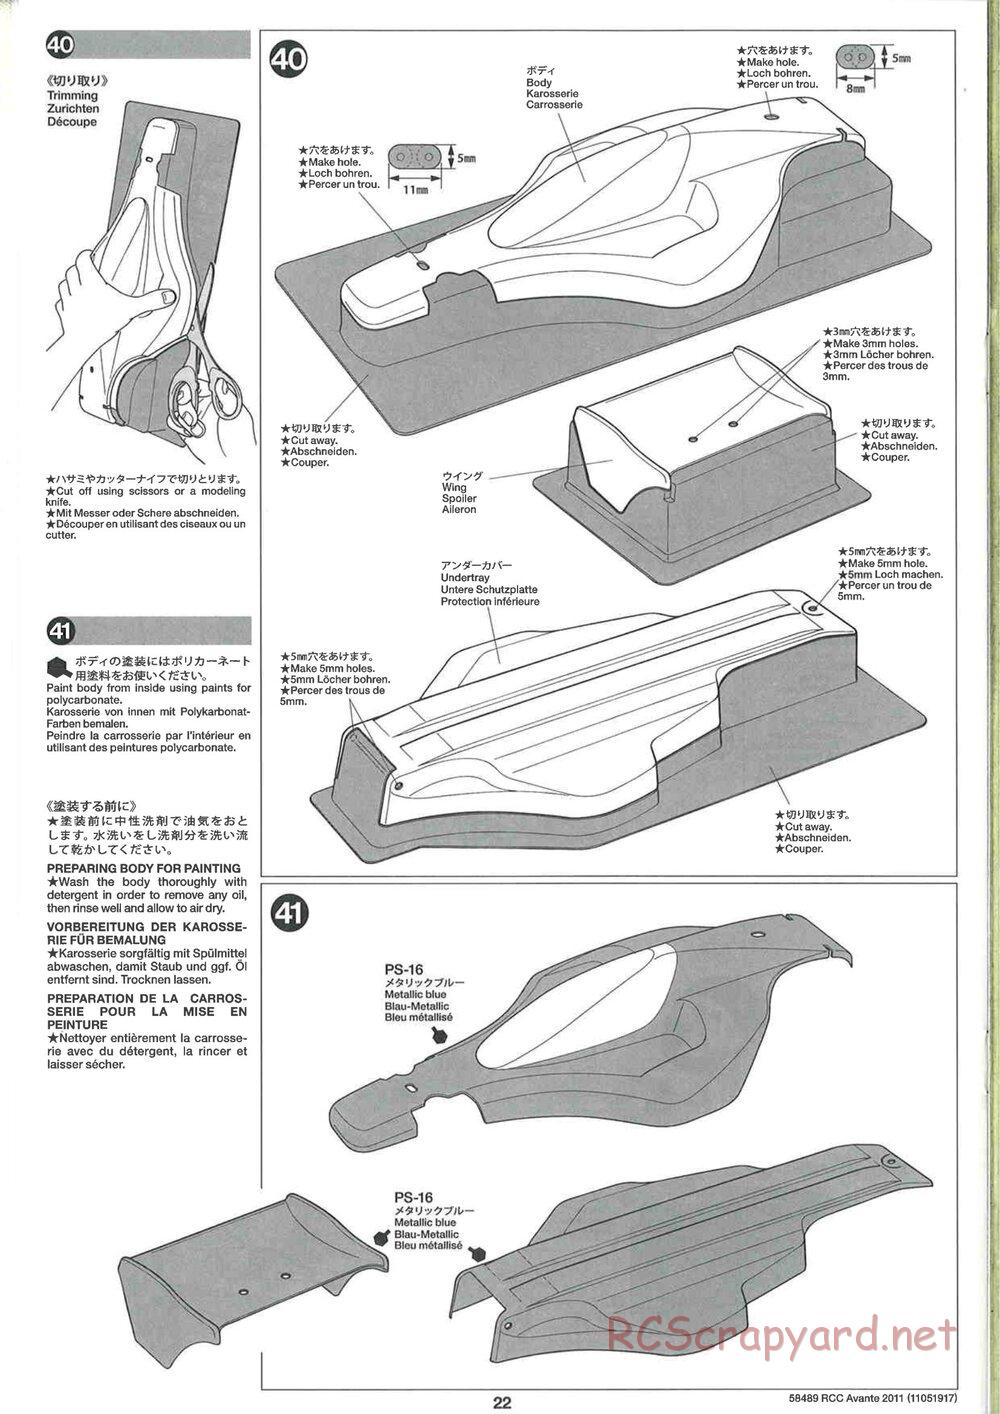 Tamiya - Avante 2011 - AV Chassis - Manual - Page 22